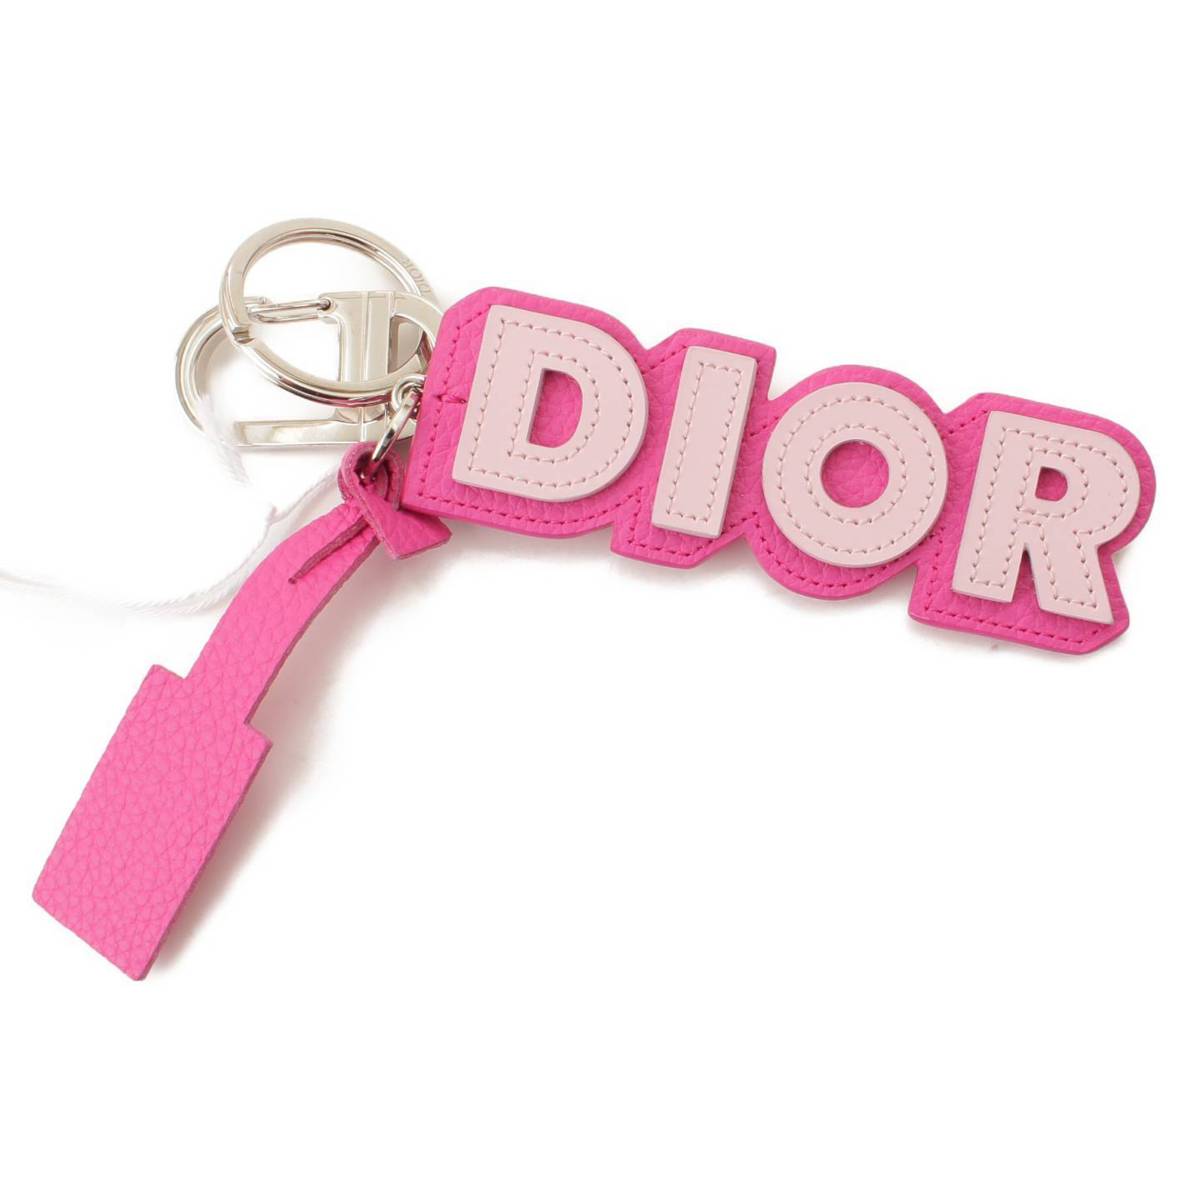 クリスチャン ディオール（Christian Dior） 中古 通販 retro レトロ